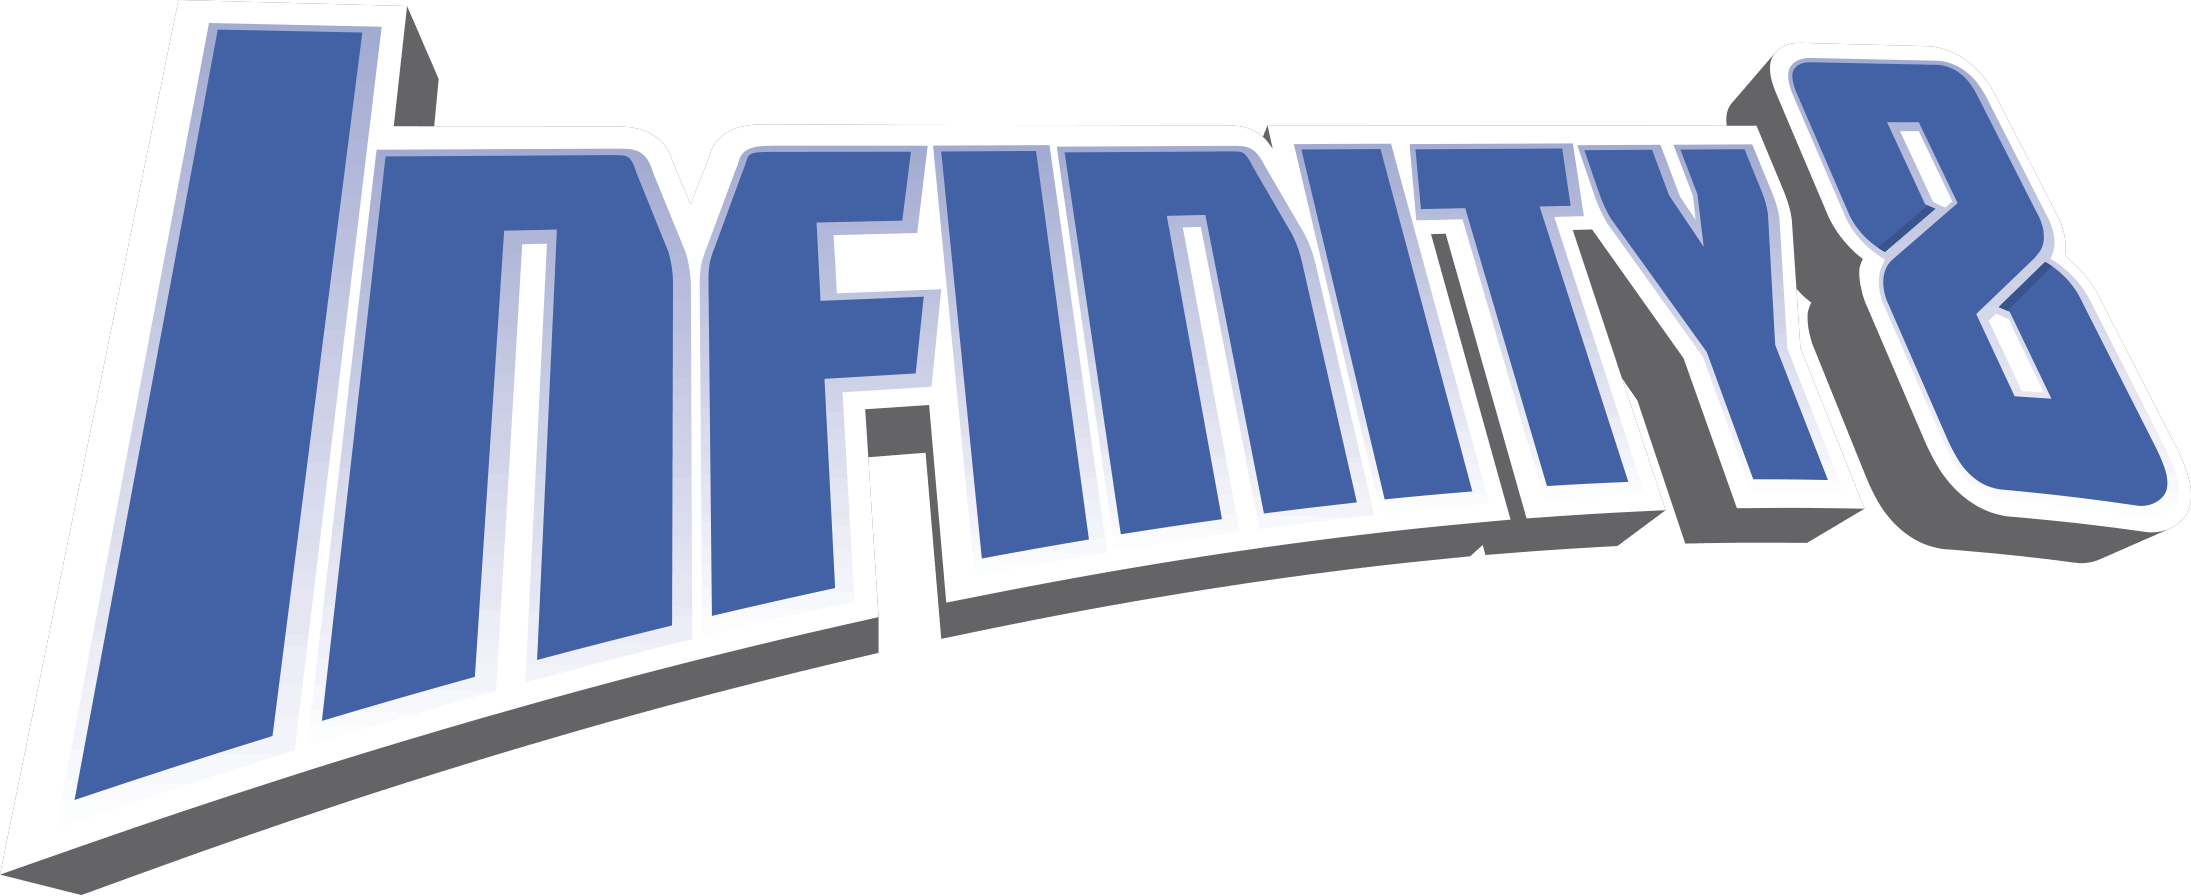 infinity_8_logo_rvb